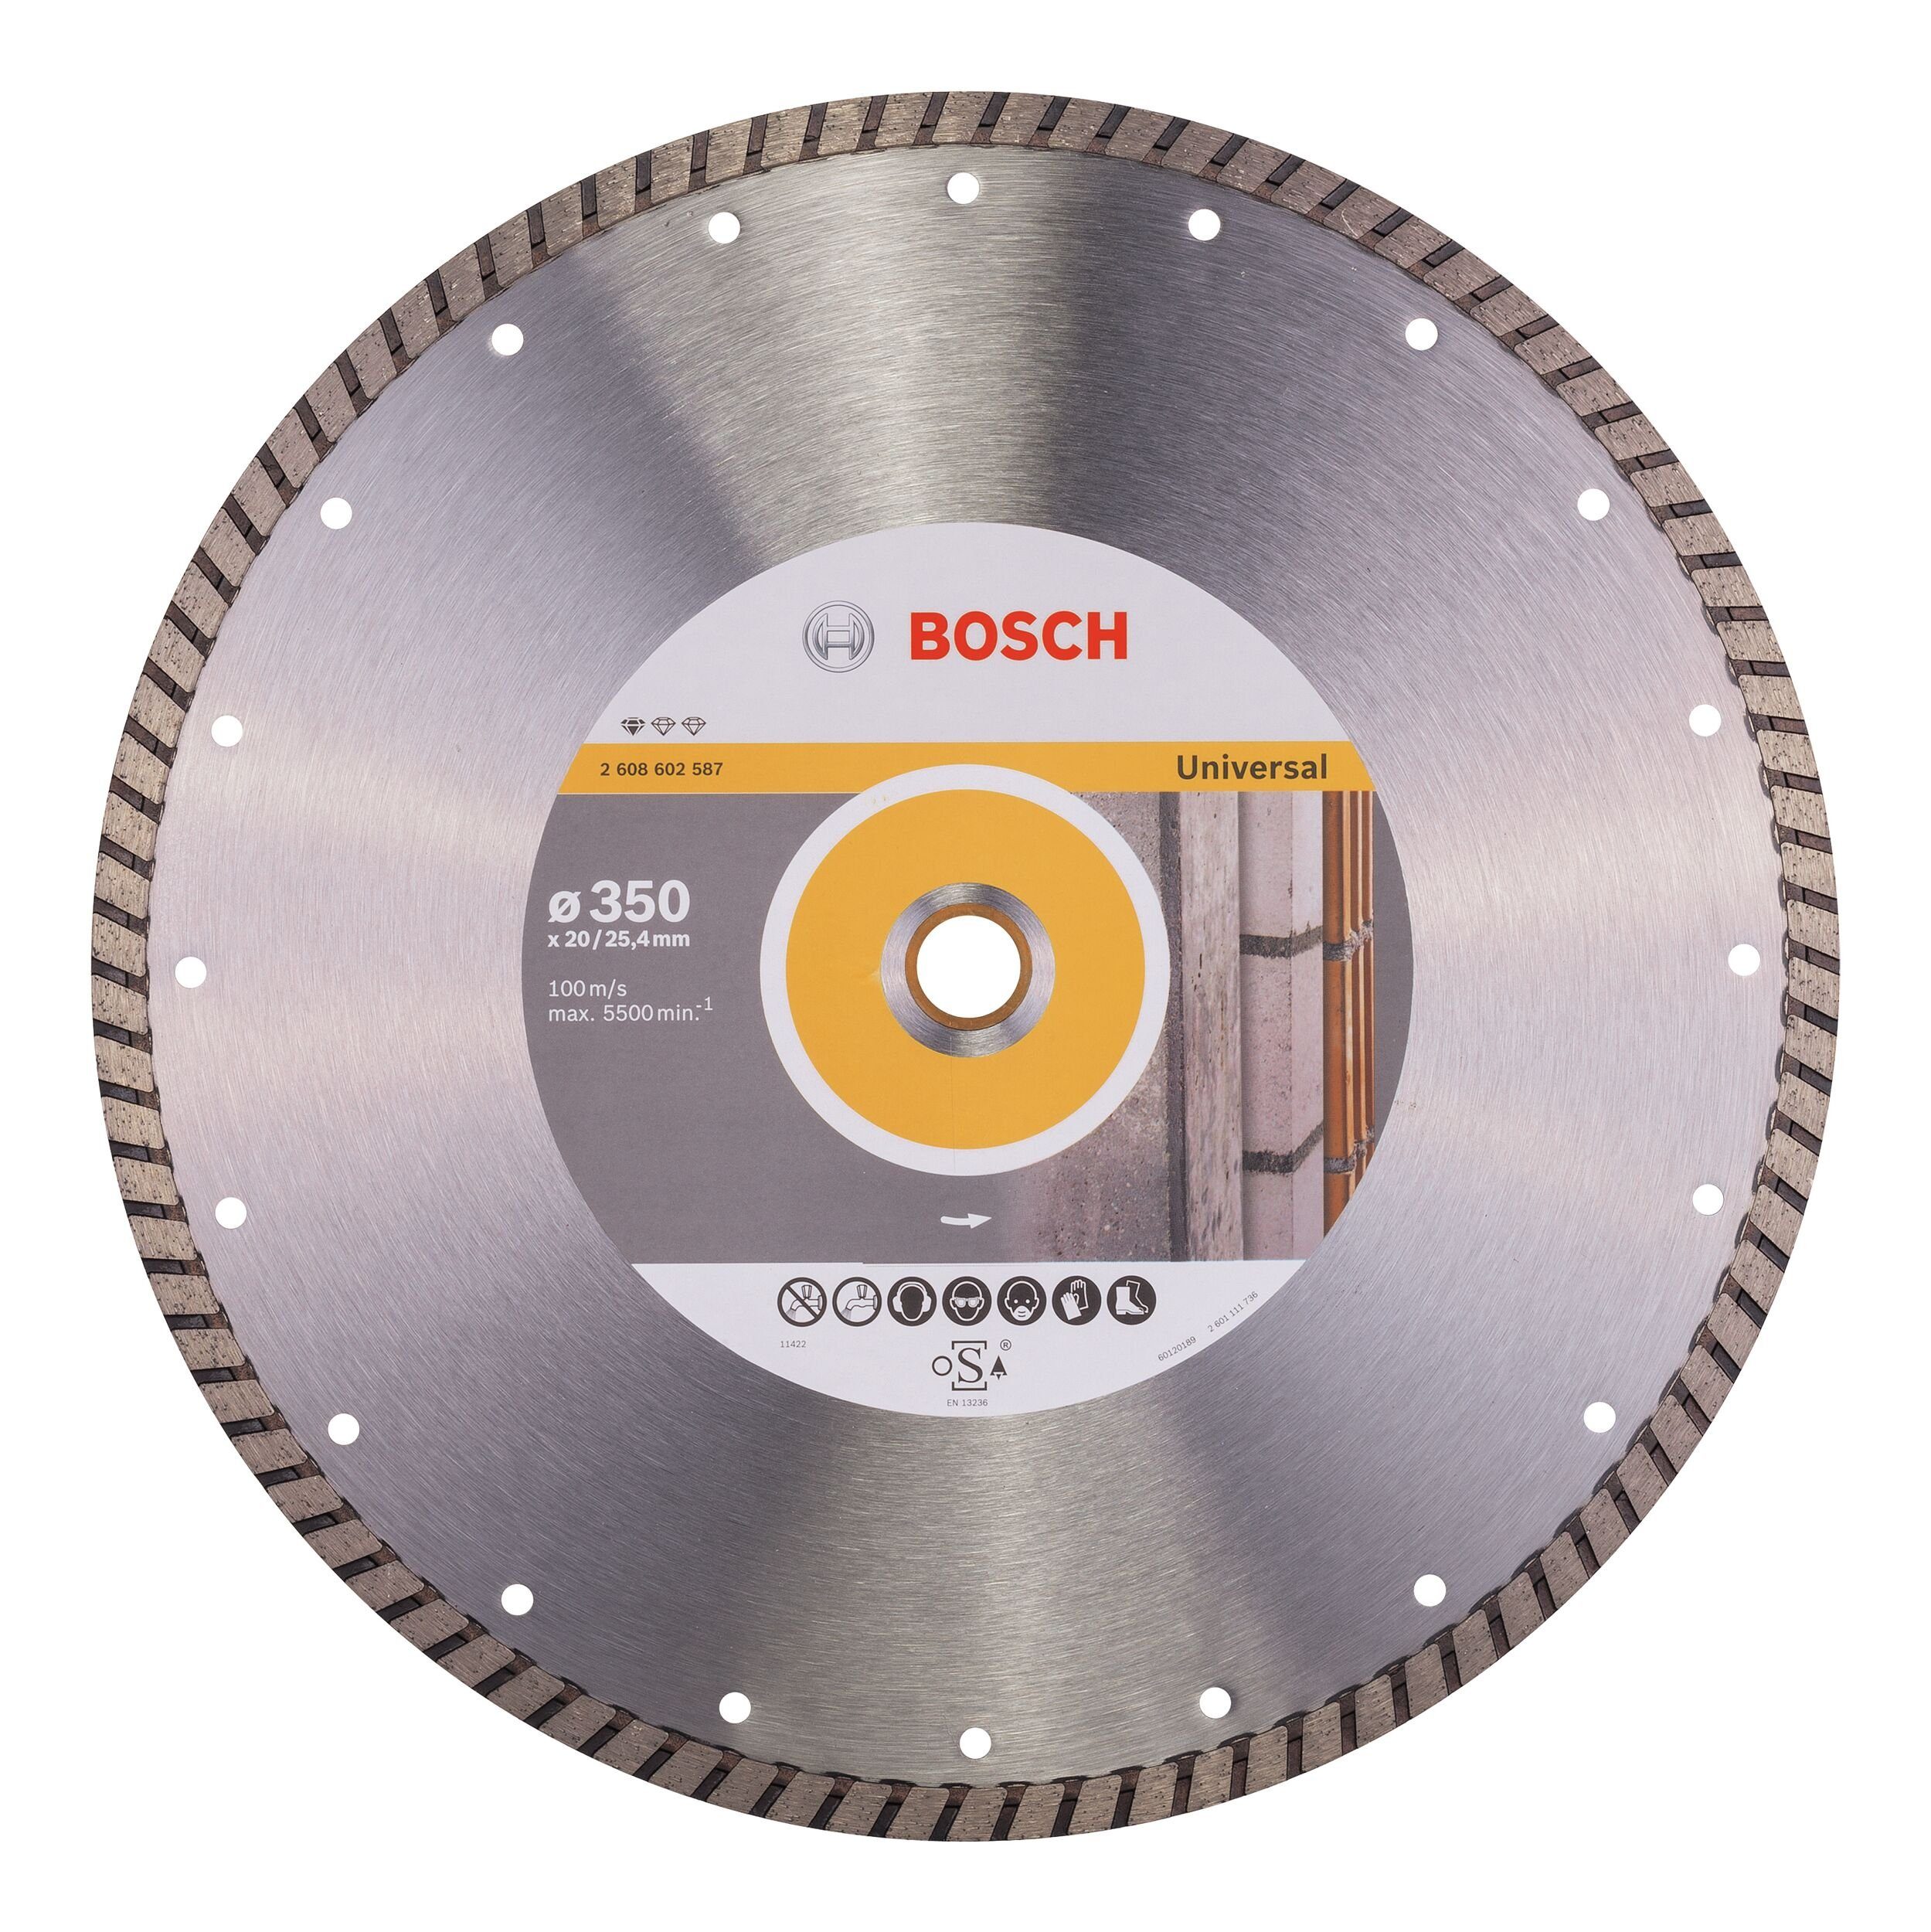 BOSCH Trennscheibe, Ø 350 mm, Standard for Universal Turbo Diamanttrennscheibe - 350 x 20/25,4 x